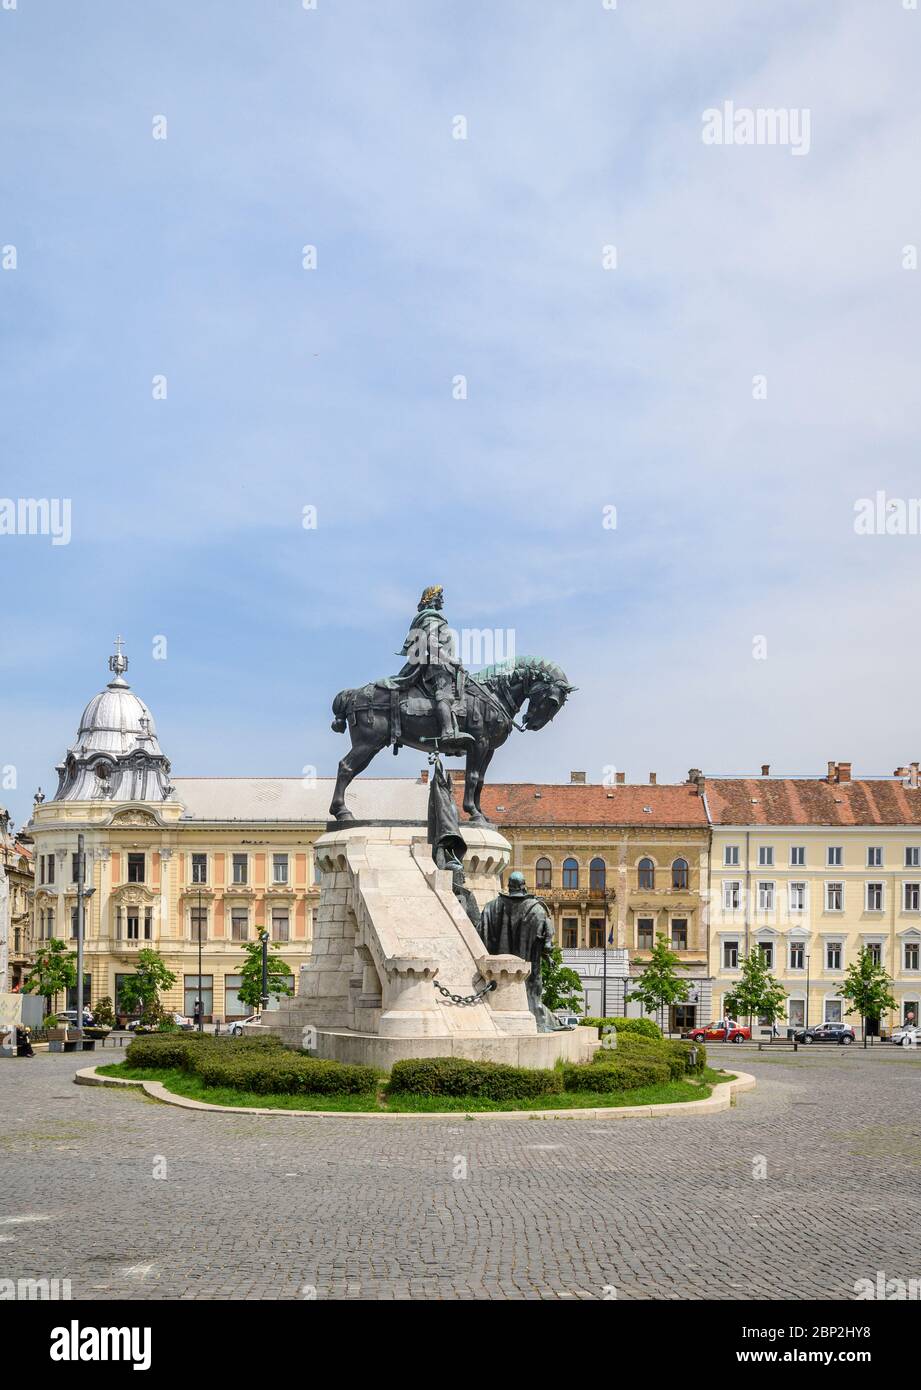 La statue équestre de Matei Corvin, également connue sous le nom de Matthias Rex ou Matias Corvinus dans le centre de la place Unirii (Union) à Cluj-Napoca ville de RO Banque D'Images